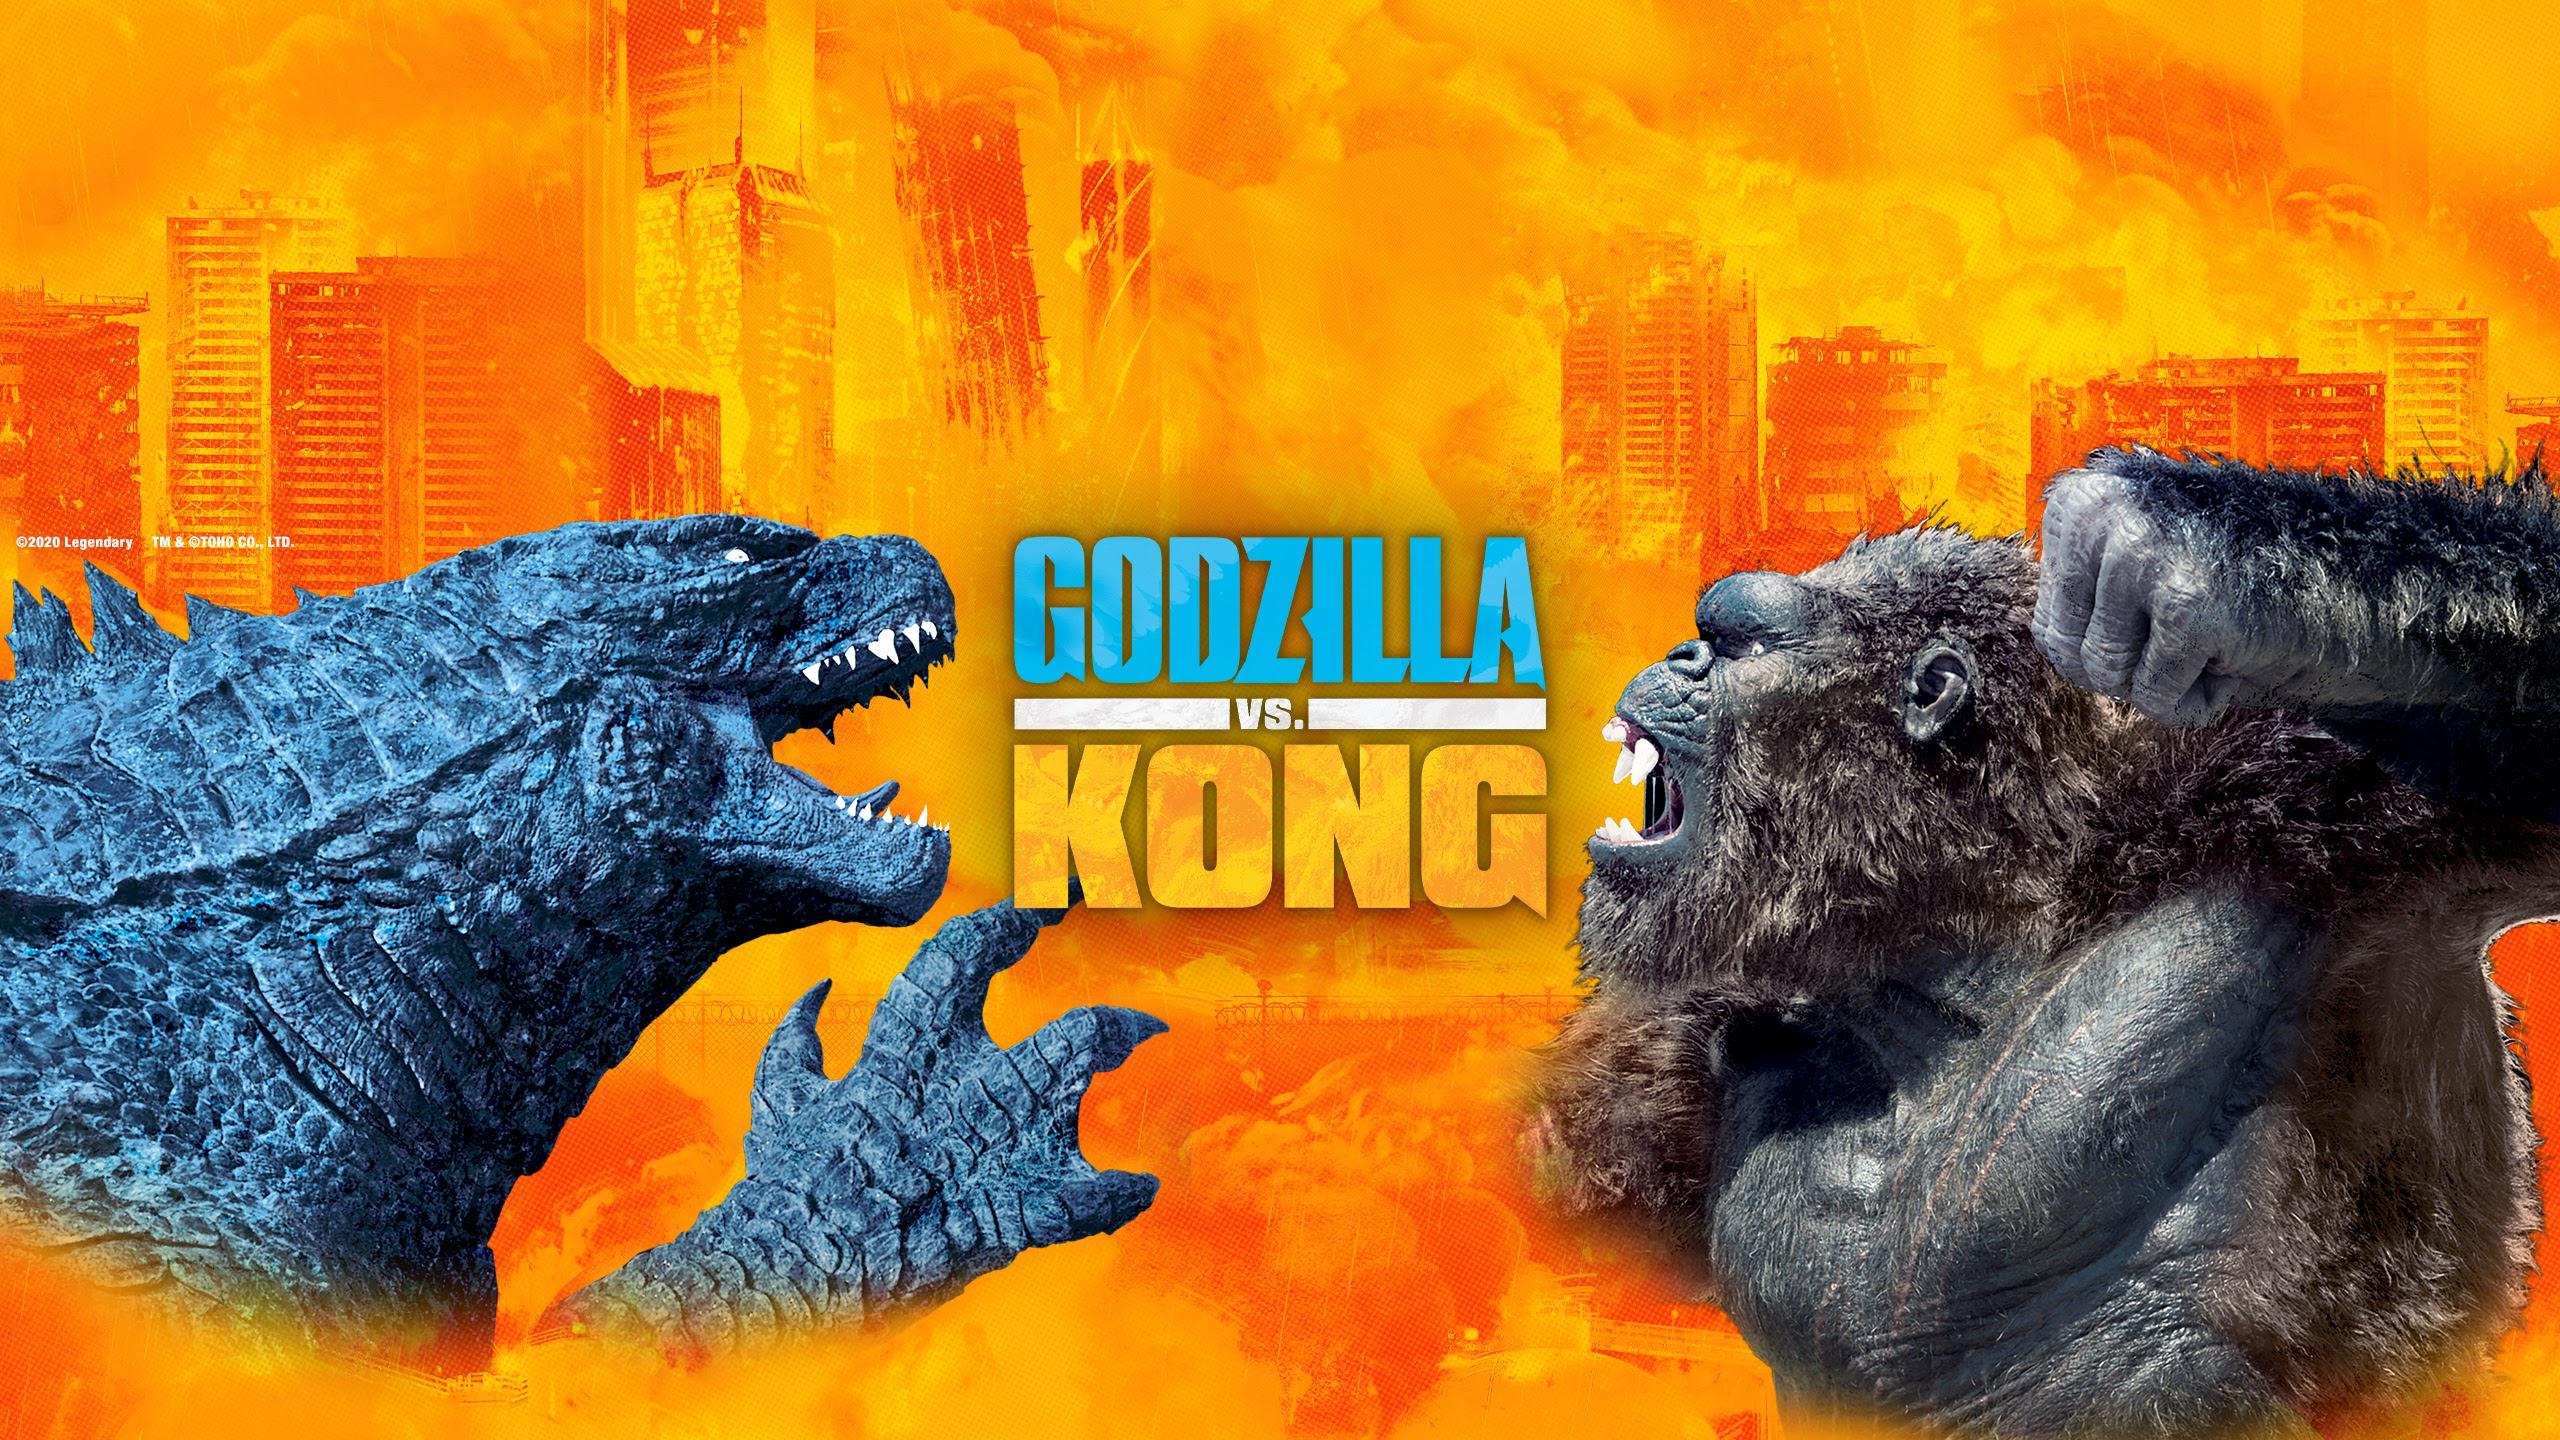 Godzilla vs. Kong (2021)imdb.com